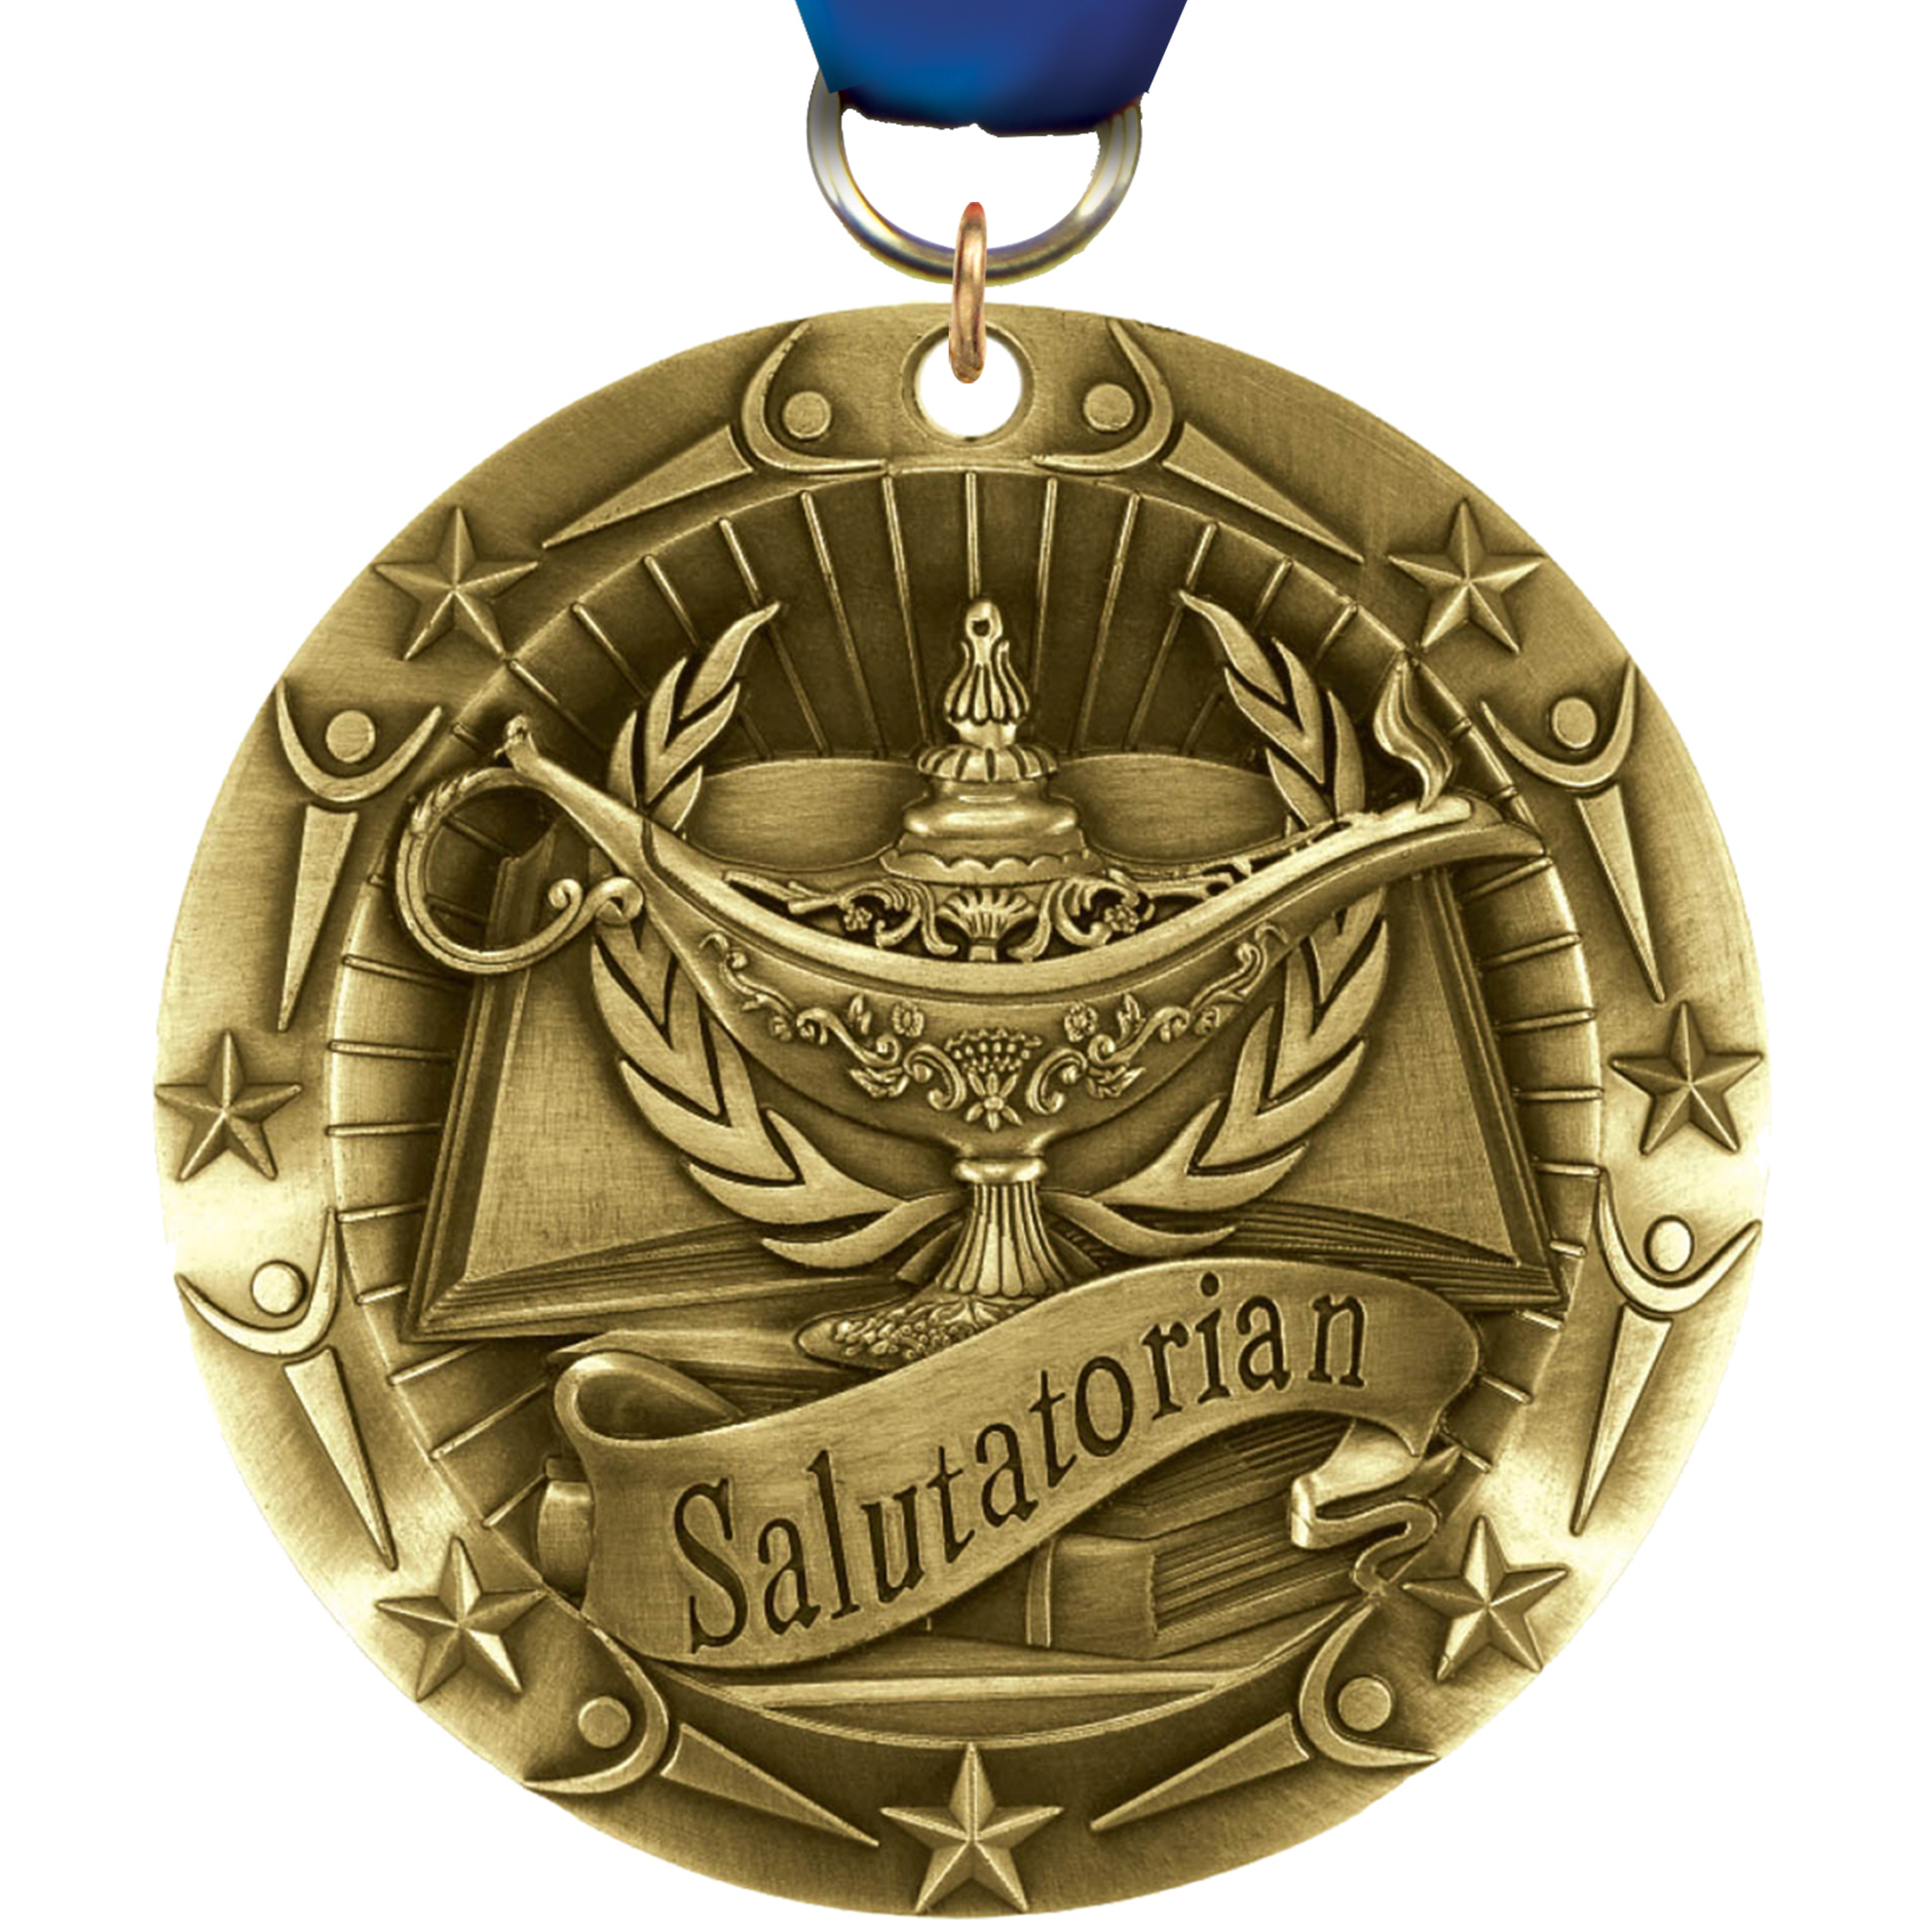 Salutatorian World Class Medal